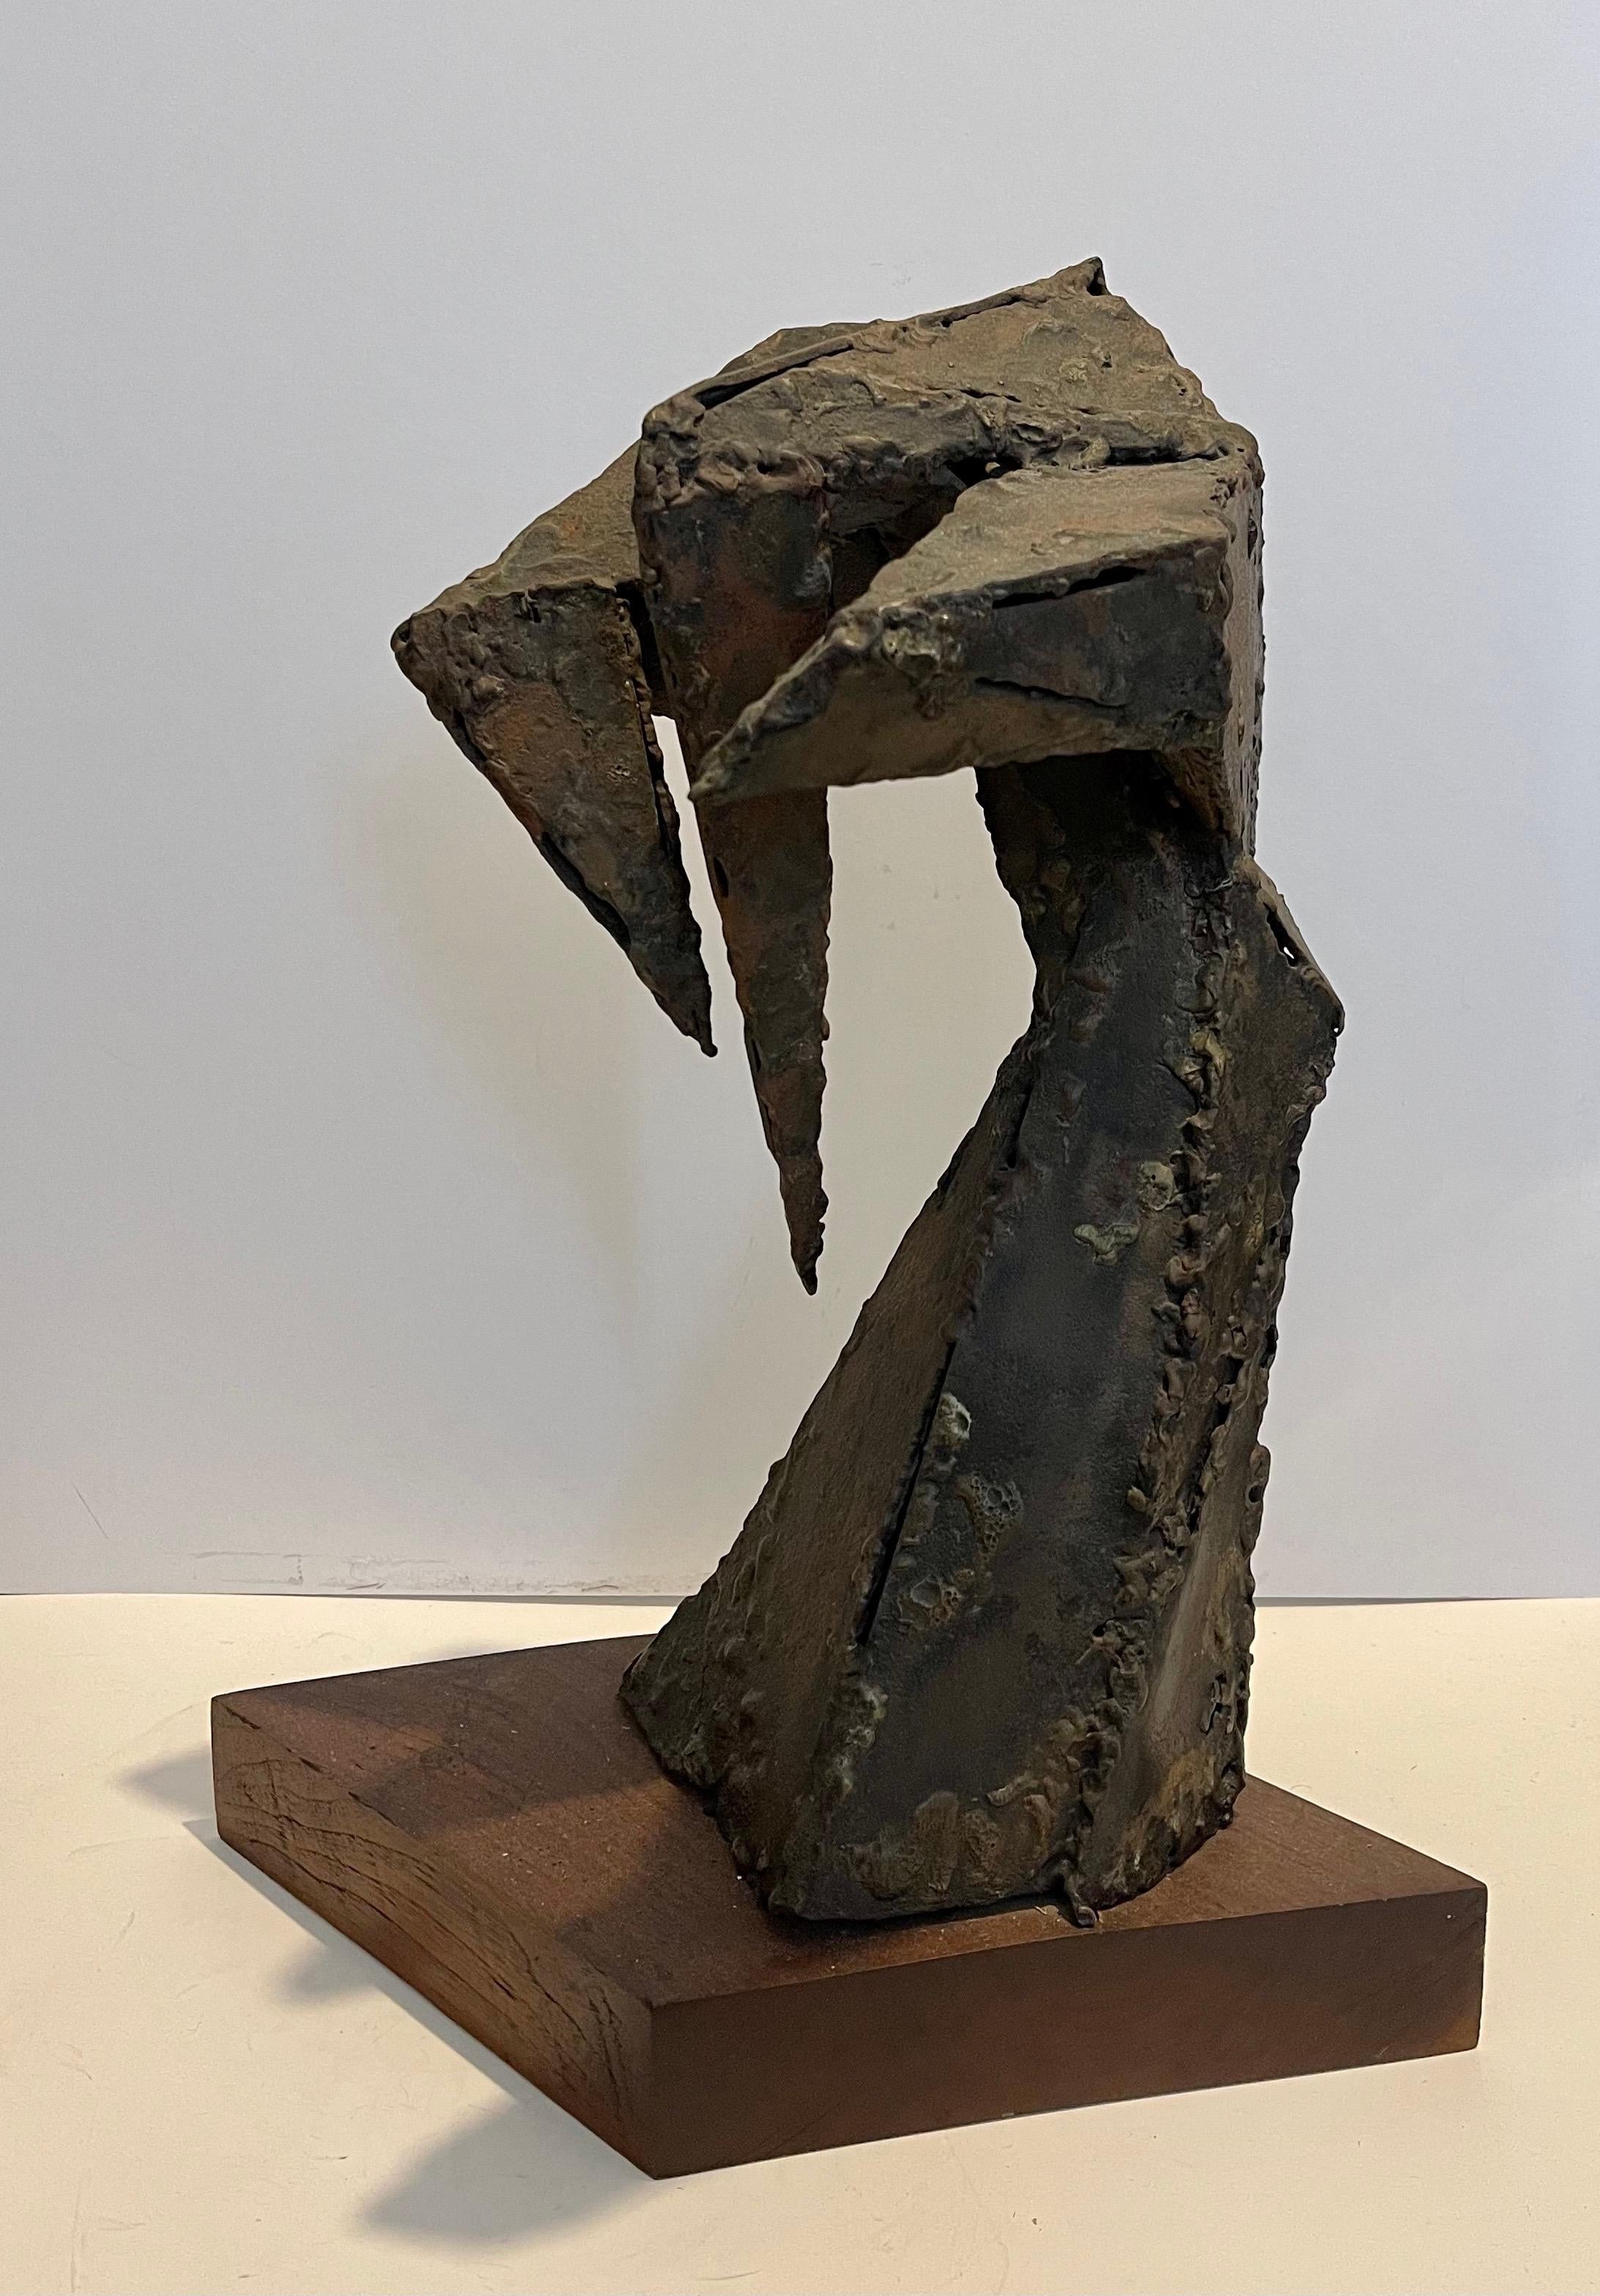 Abstract Sculpture Seymour Lipton - Sculpture expressionniste abstraite expressionniste biomorphe en métal soudé 